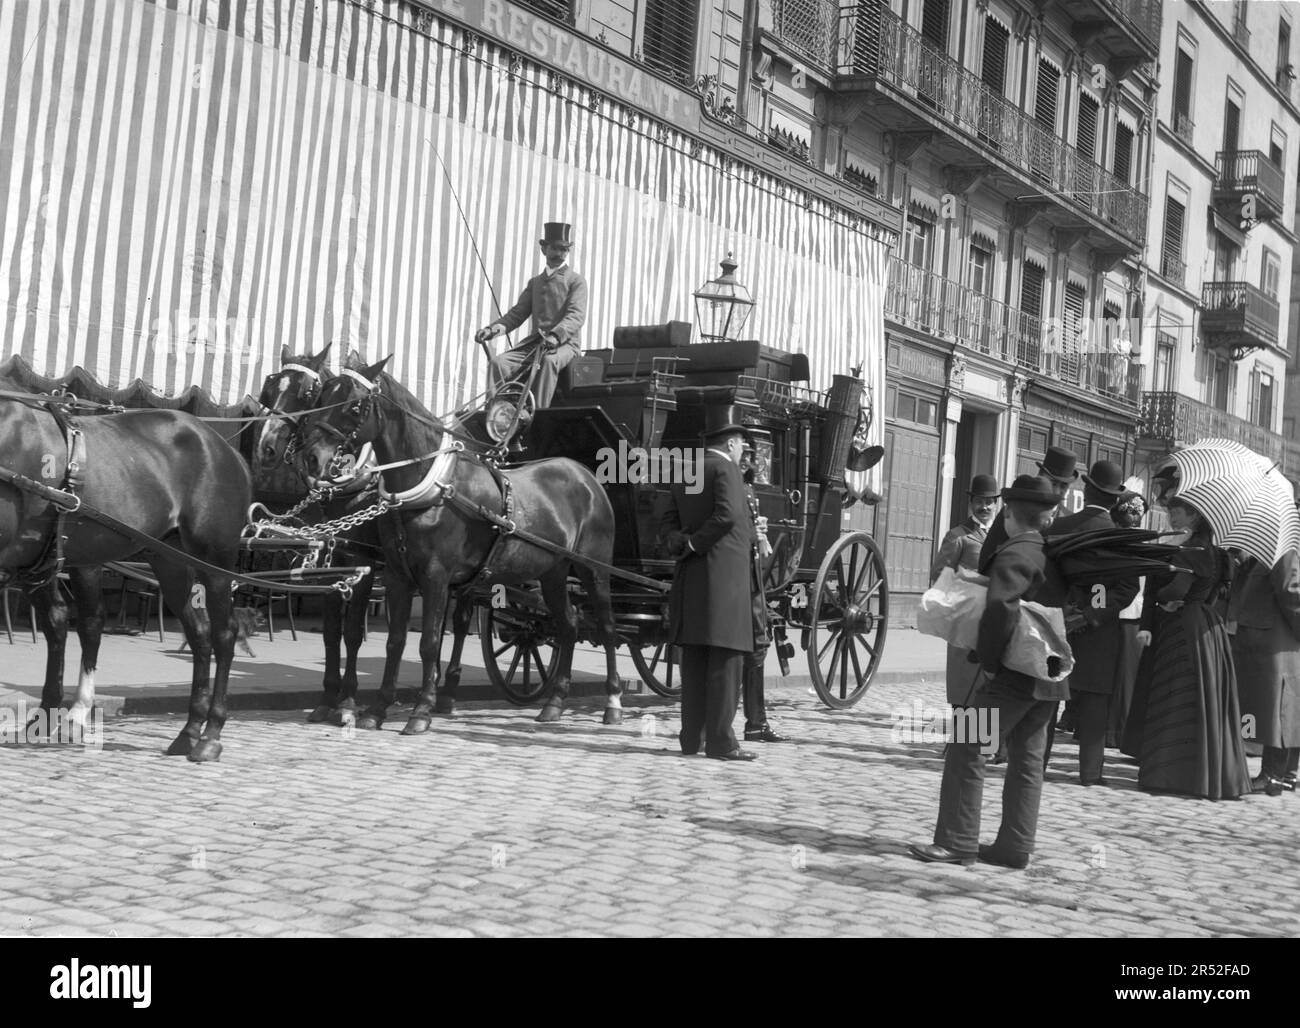 Un groupe d'hommes et de femmes attend à côté d'une calèche à Lyon. Début du 20th siècle. Ancienne photographie numérisée à partir d'une plaque de verre. Banque D'Images